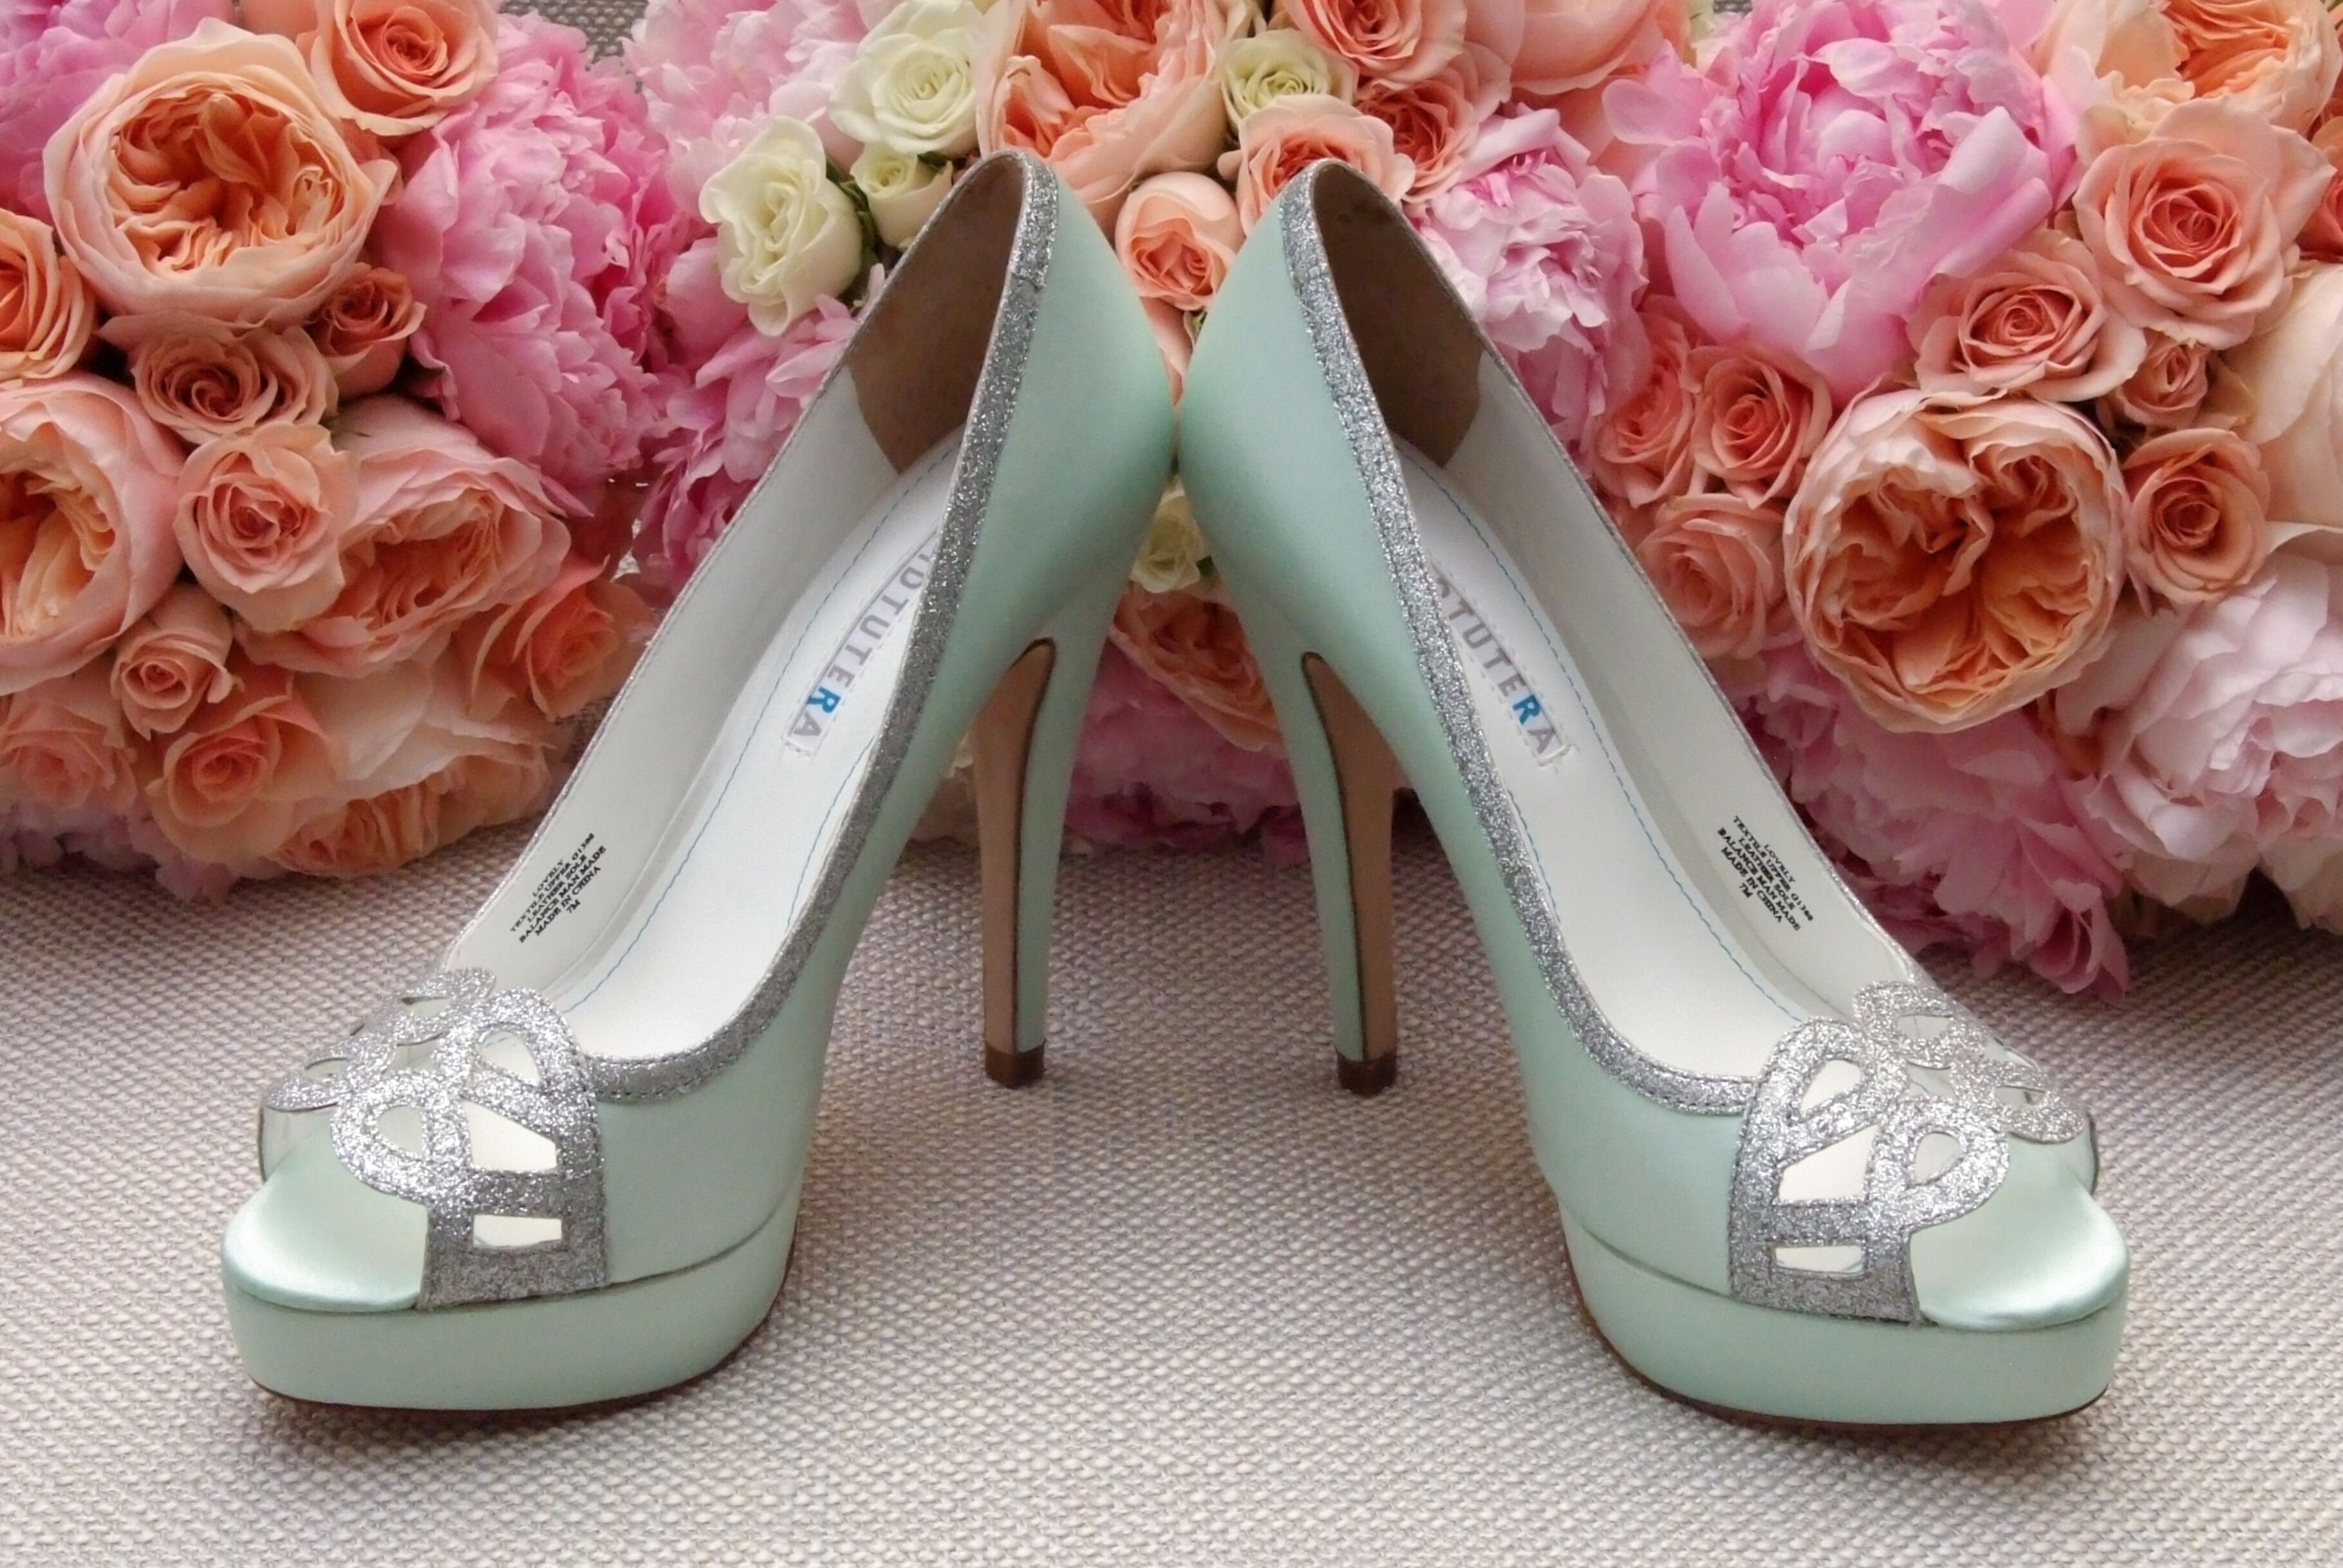 custom wedding shoes david tutera